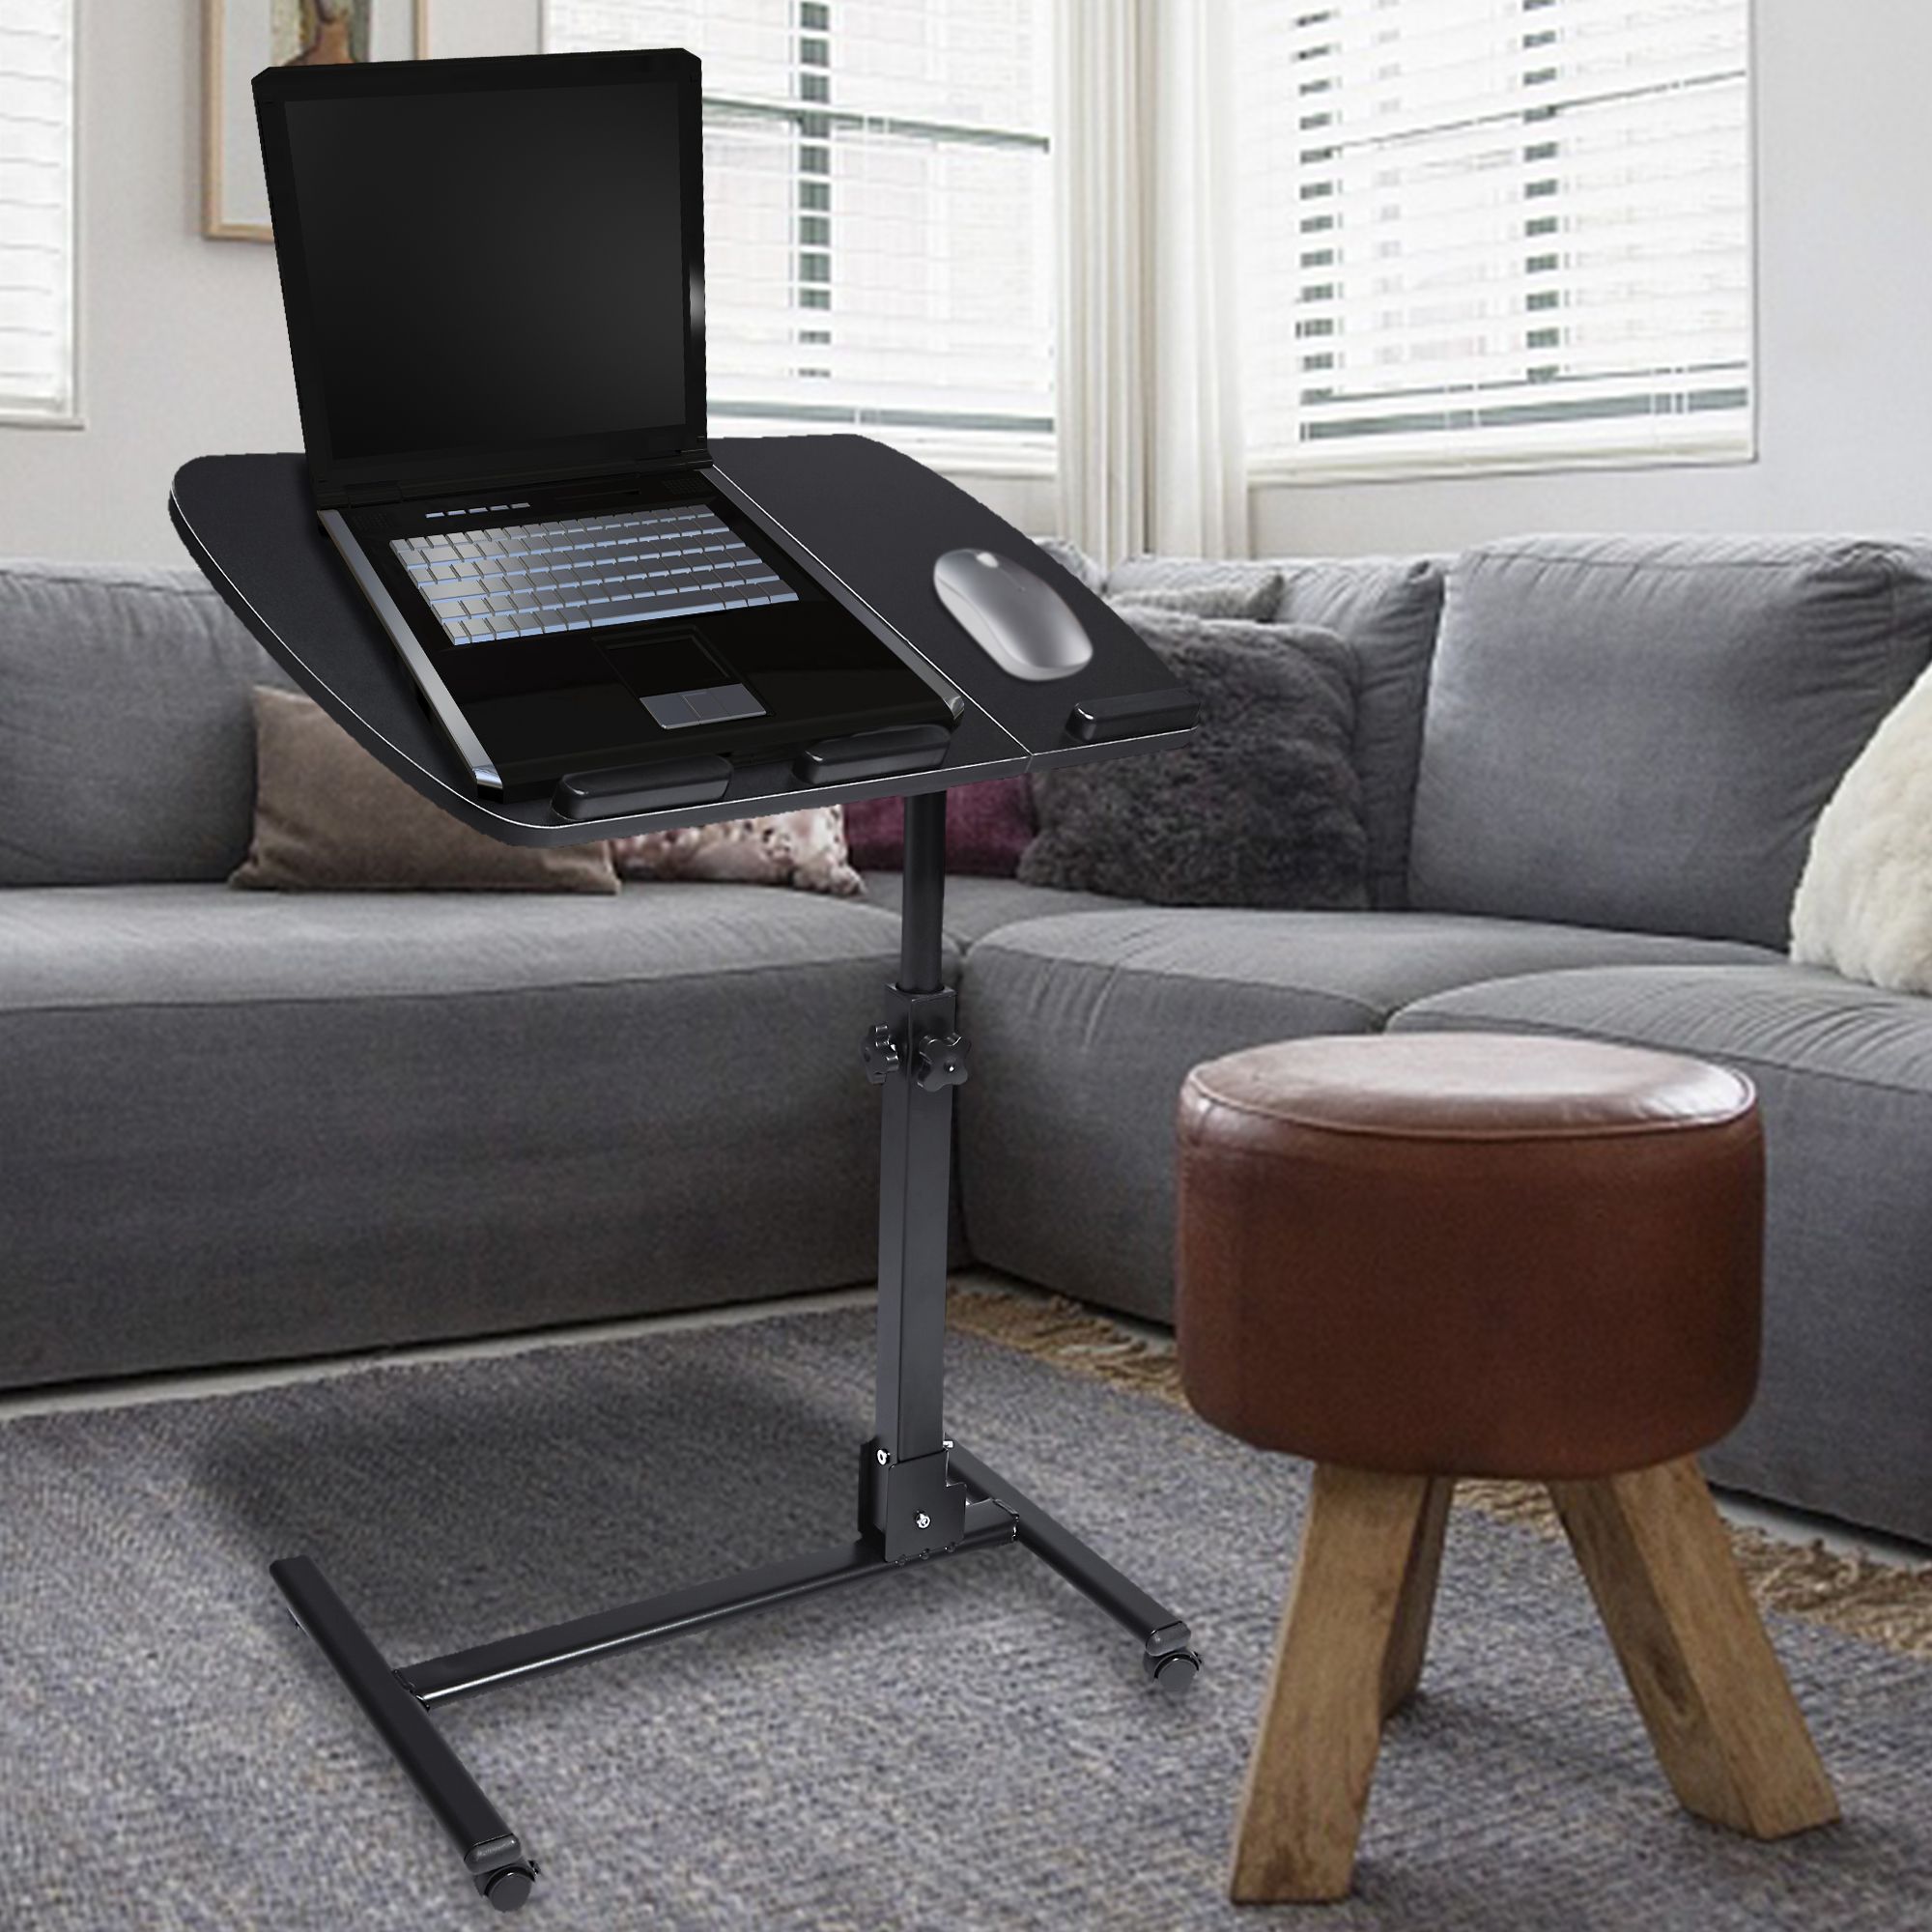 Jansion Laptop Table House Work 360 Degrees High Adjustable Mobile Regarding Black Adjustable Laptop Desks (View 12 of 15)